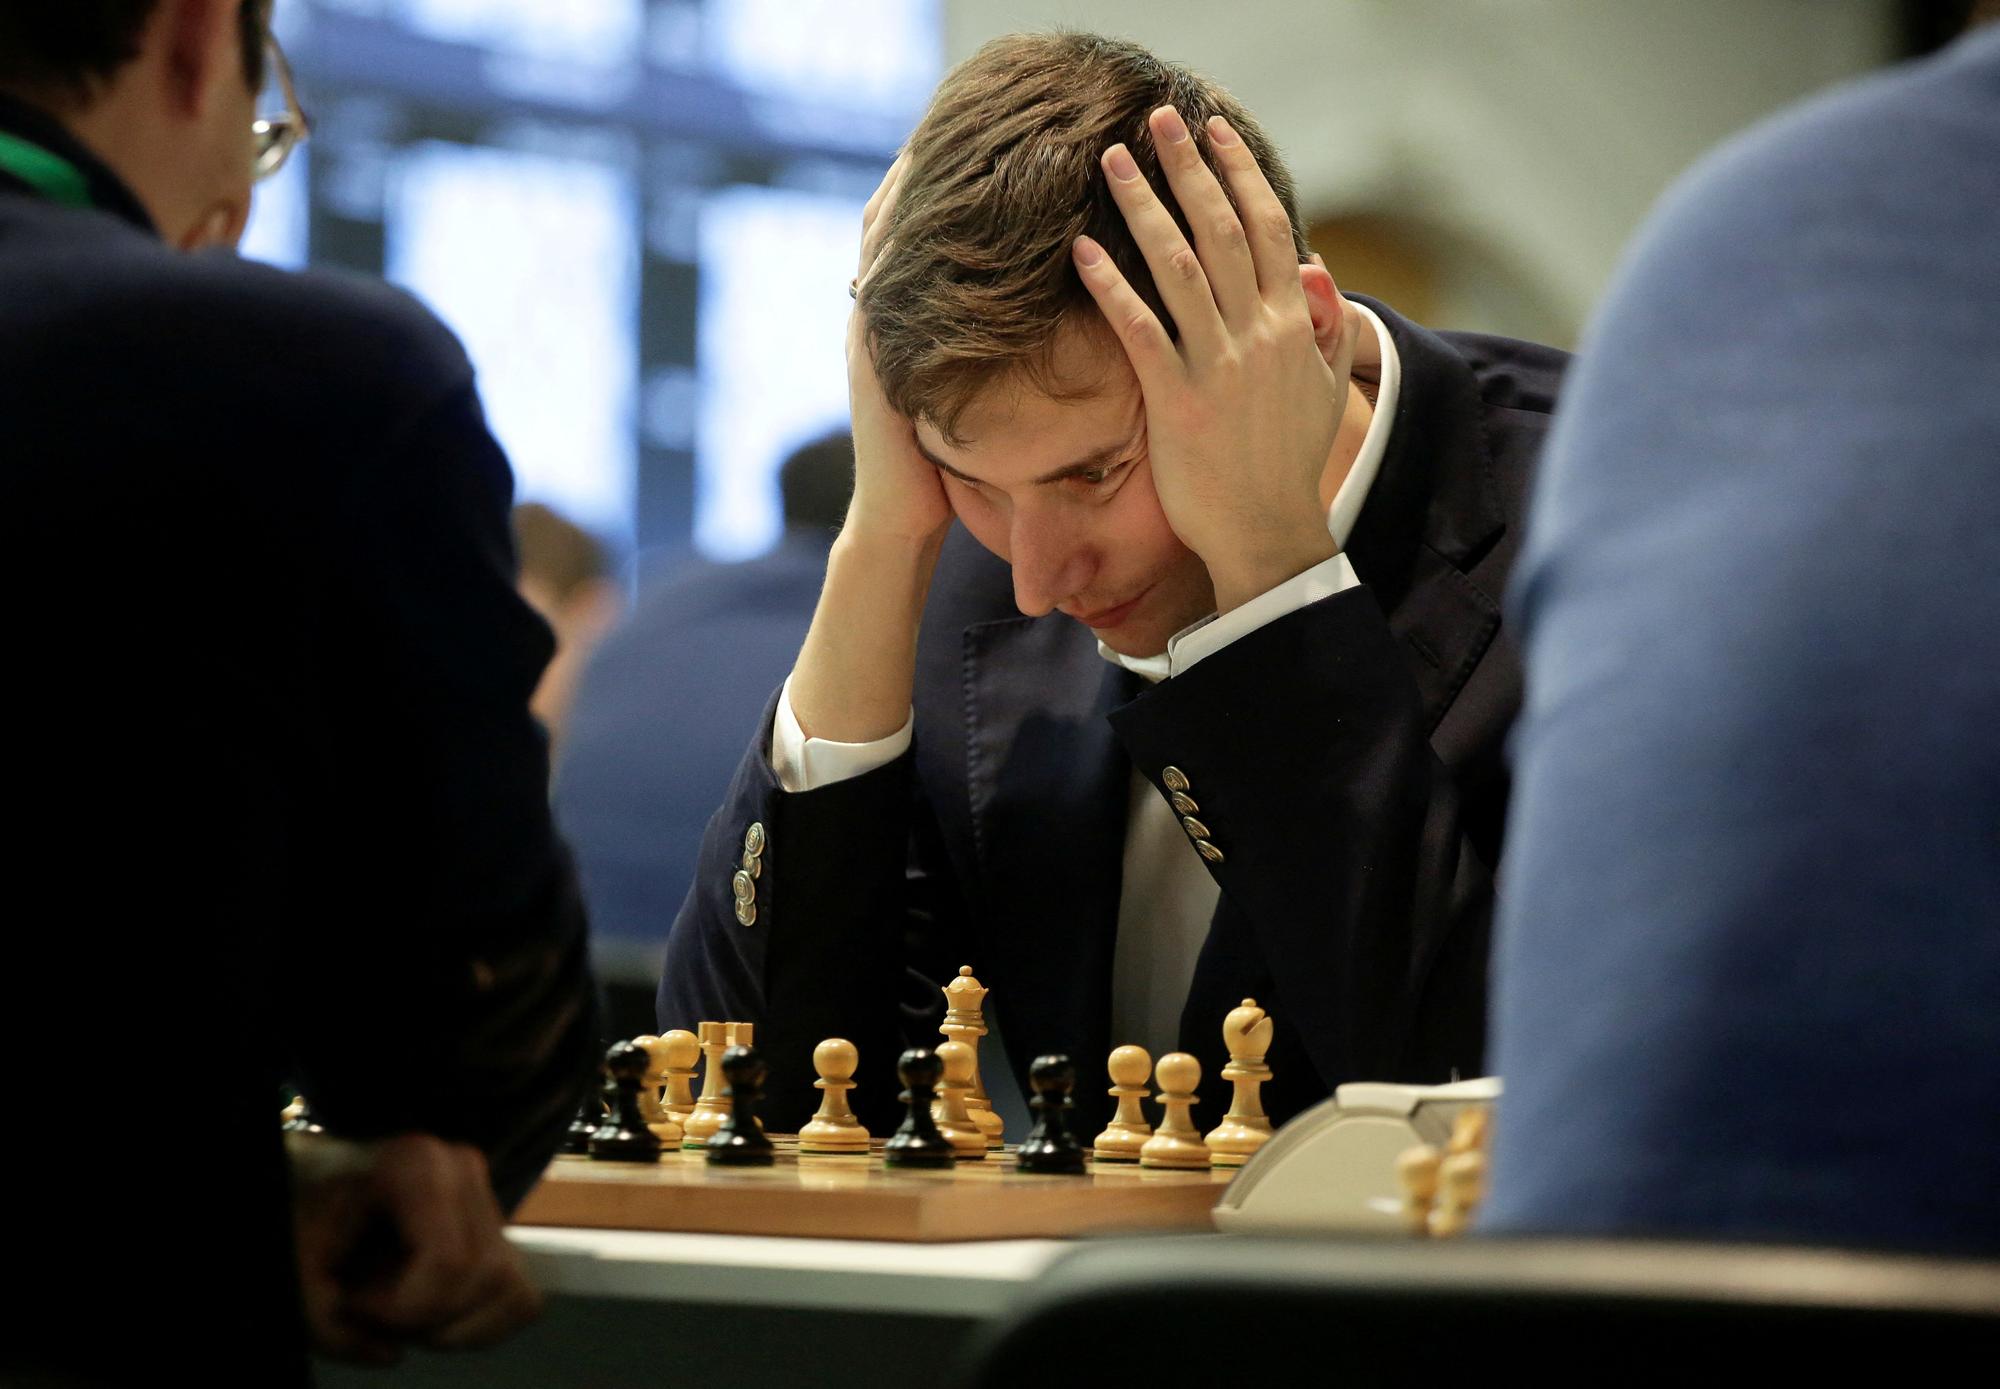 El jugador Sergey Karjakin durante un campeonato de ajedrez.